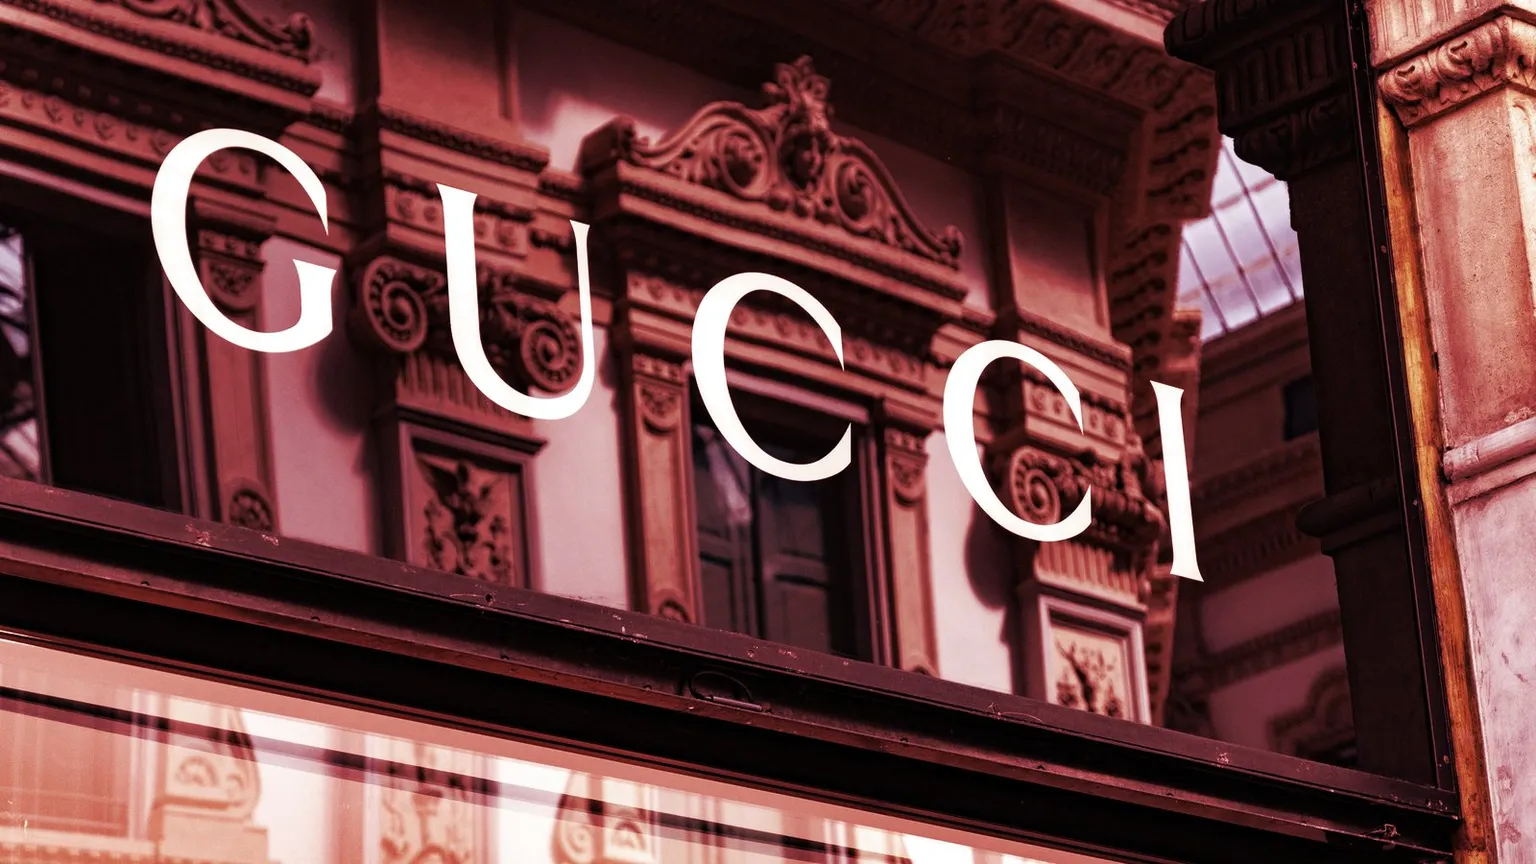 Una boutique de Gucci en Milán. Imagen: Shutterstock